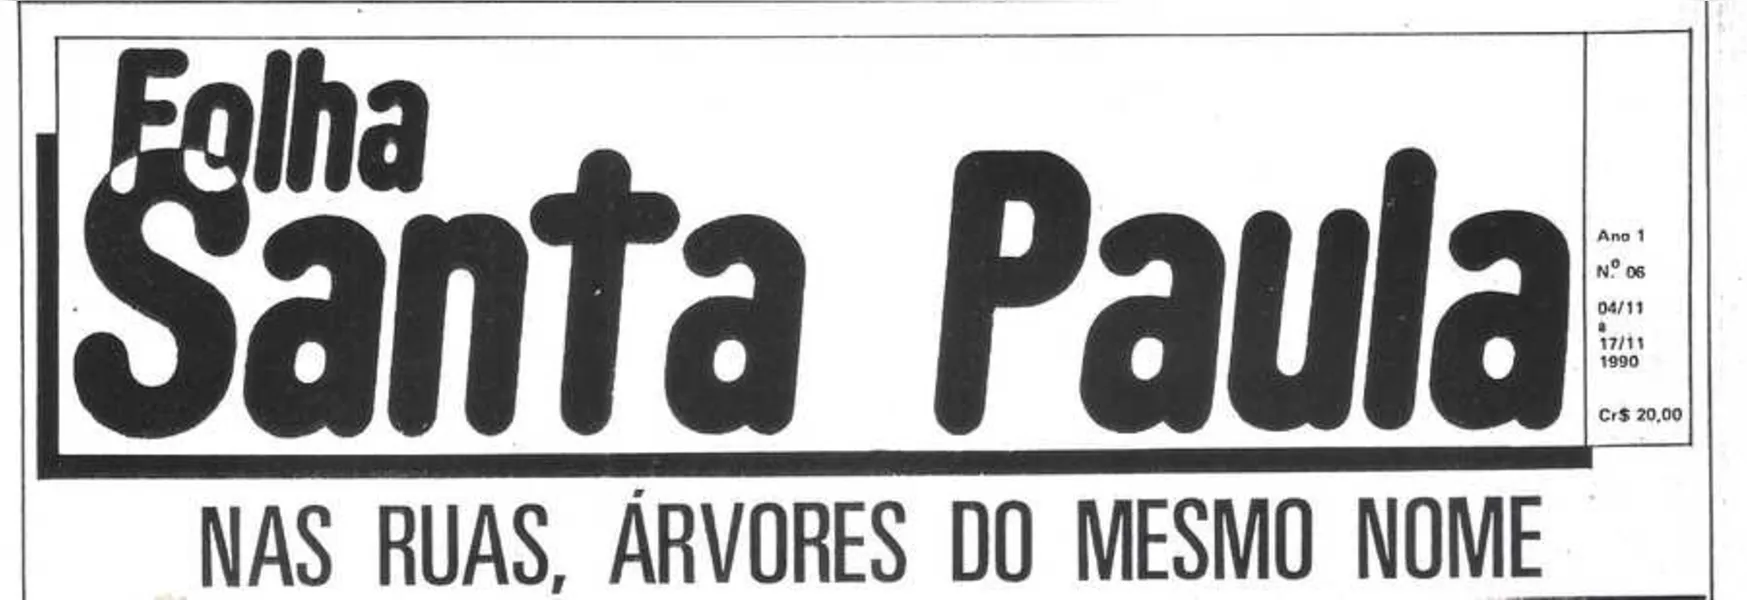 FOLHA SANTA PAULA- A manchete do Jornal Folha de Santa Paula de 4 a 17 de 11 de 1990 está contando sobre a denominação de nomes de árvores às ruas do Santa Paula